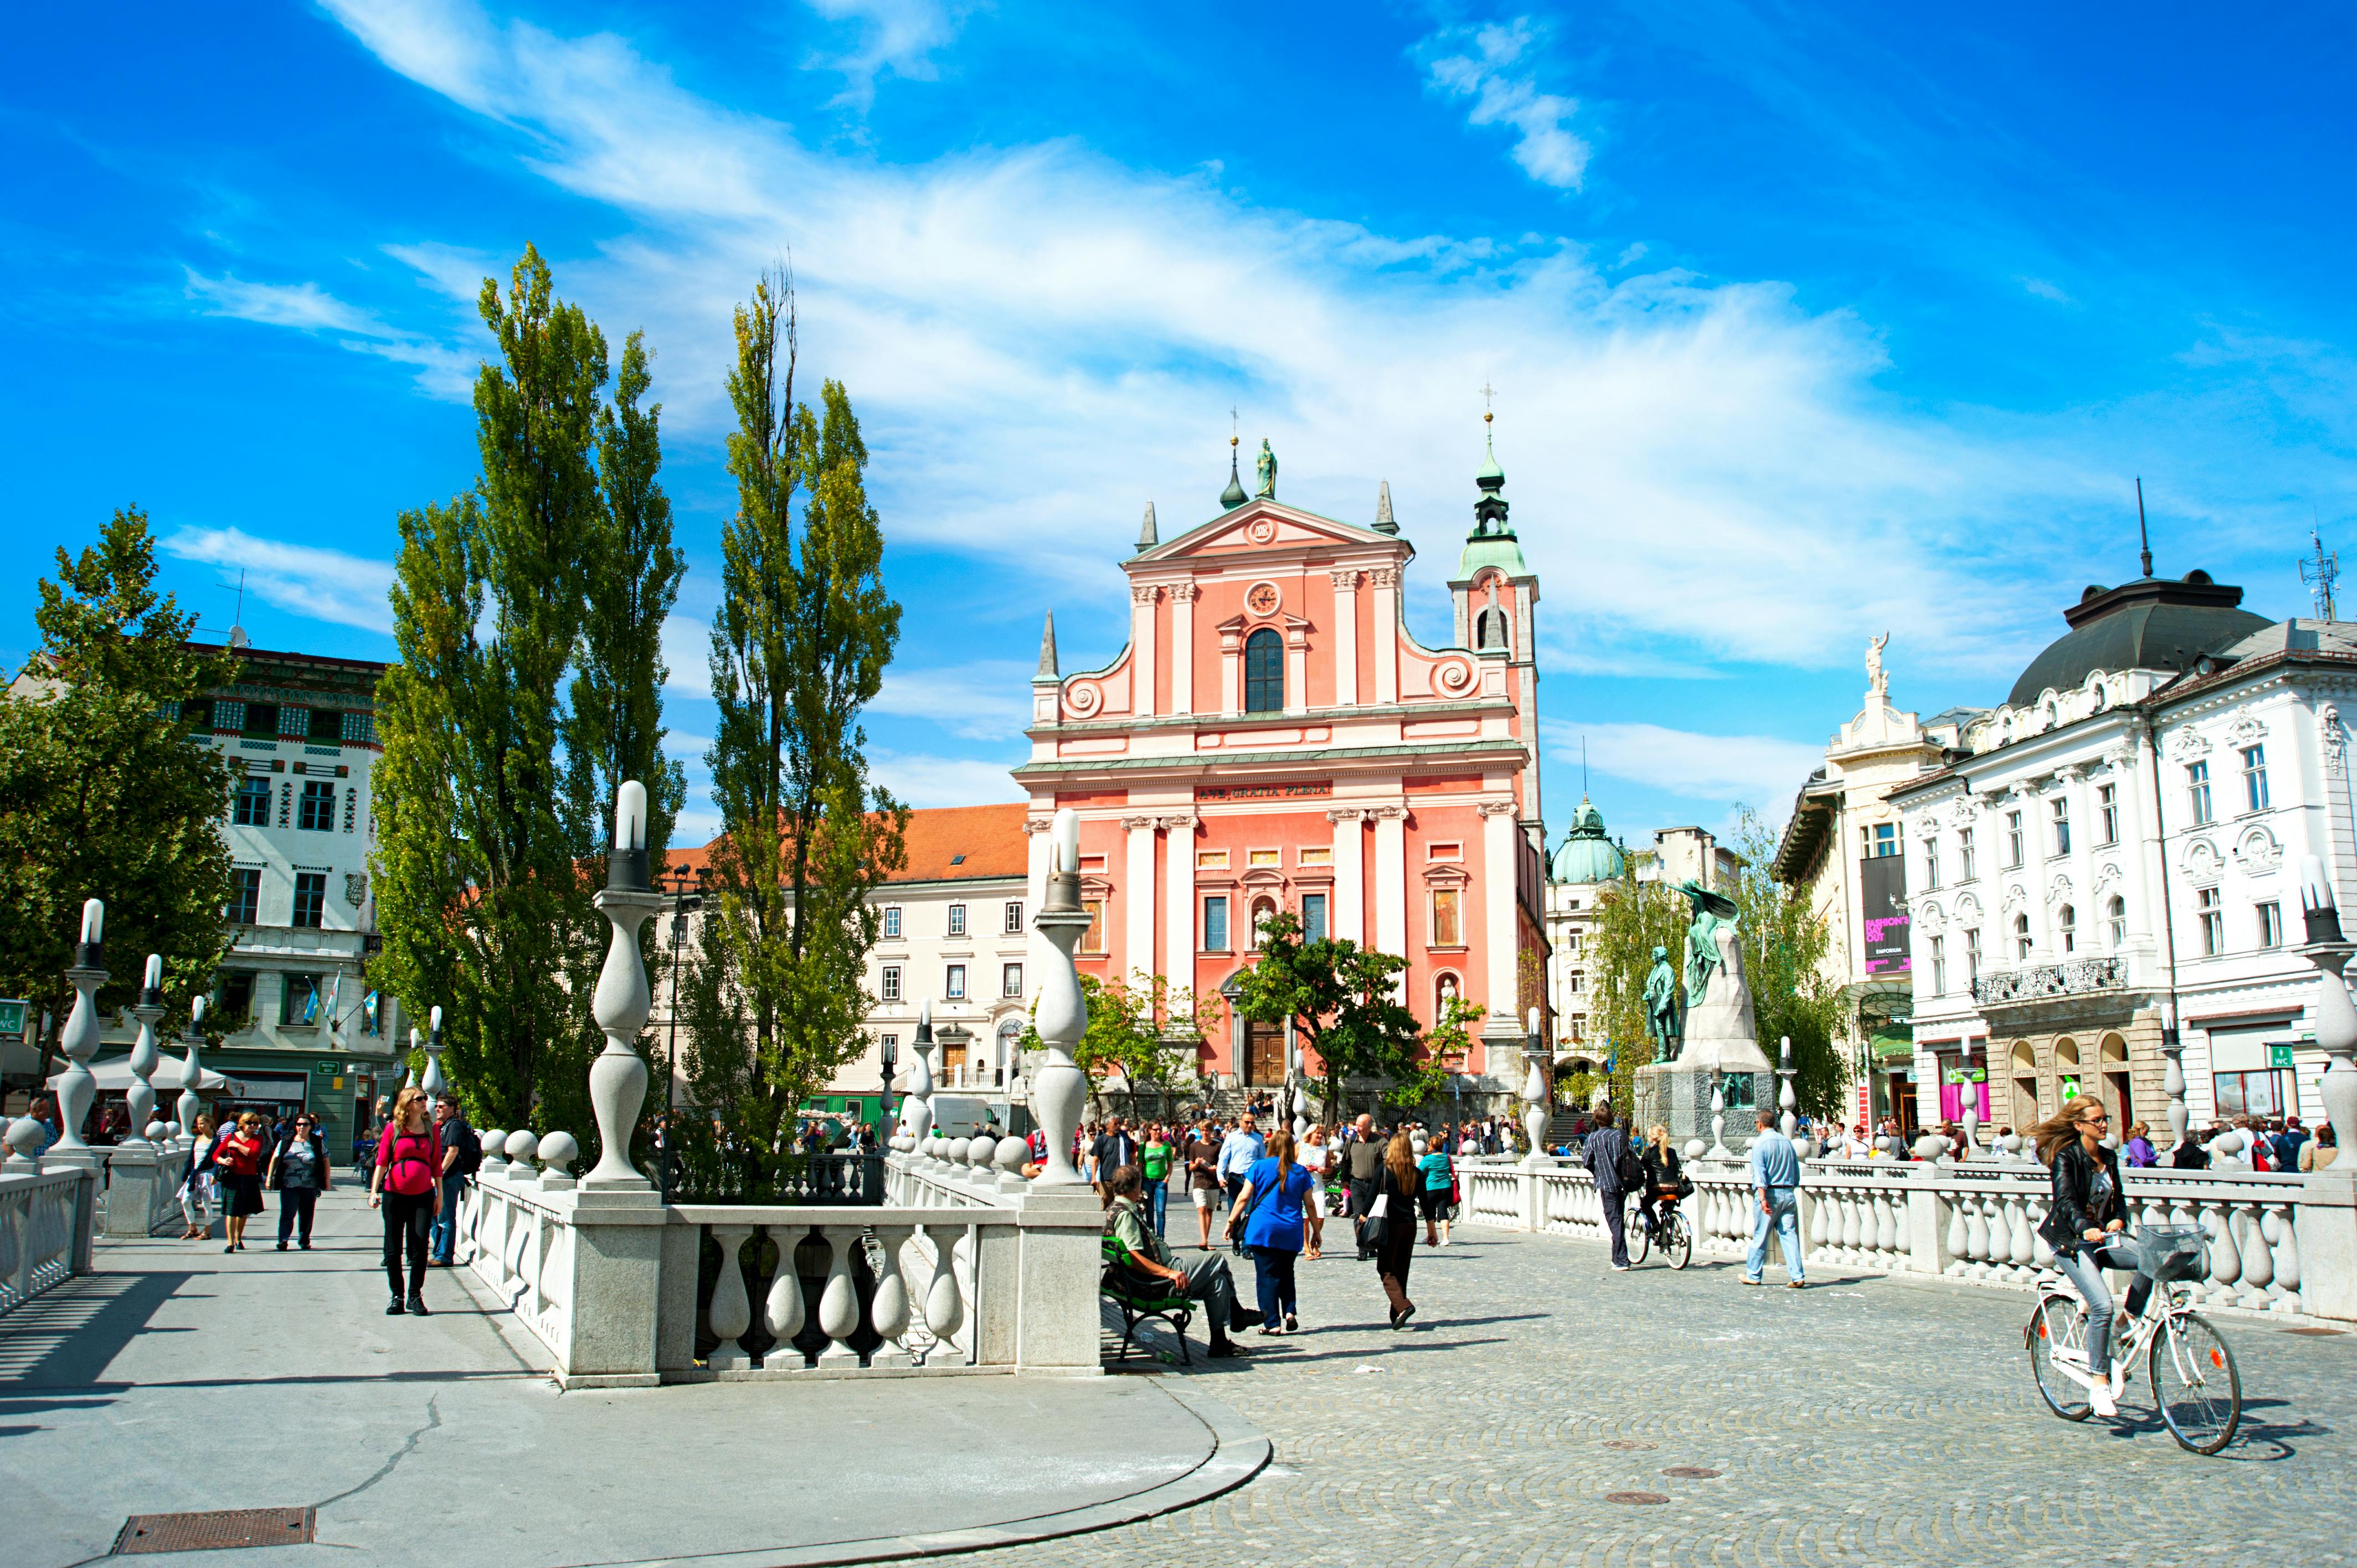 Visita al centro histórico de la ciudad y al castillo de Liubliana.